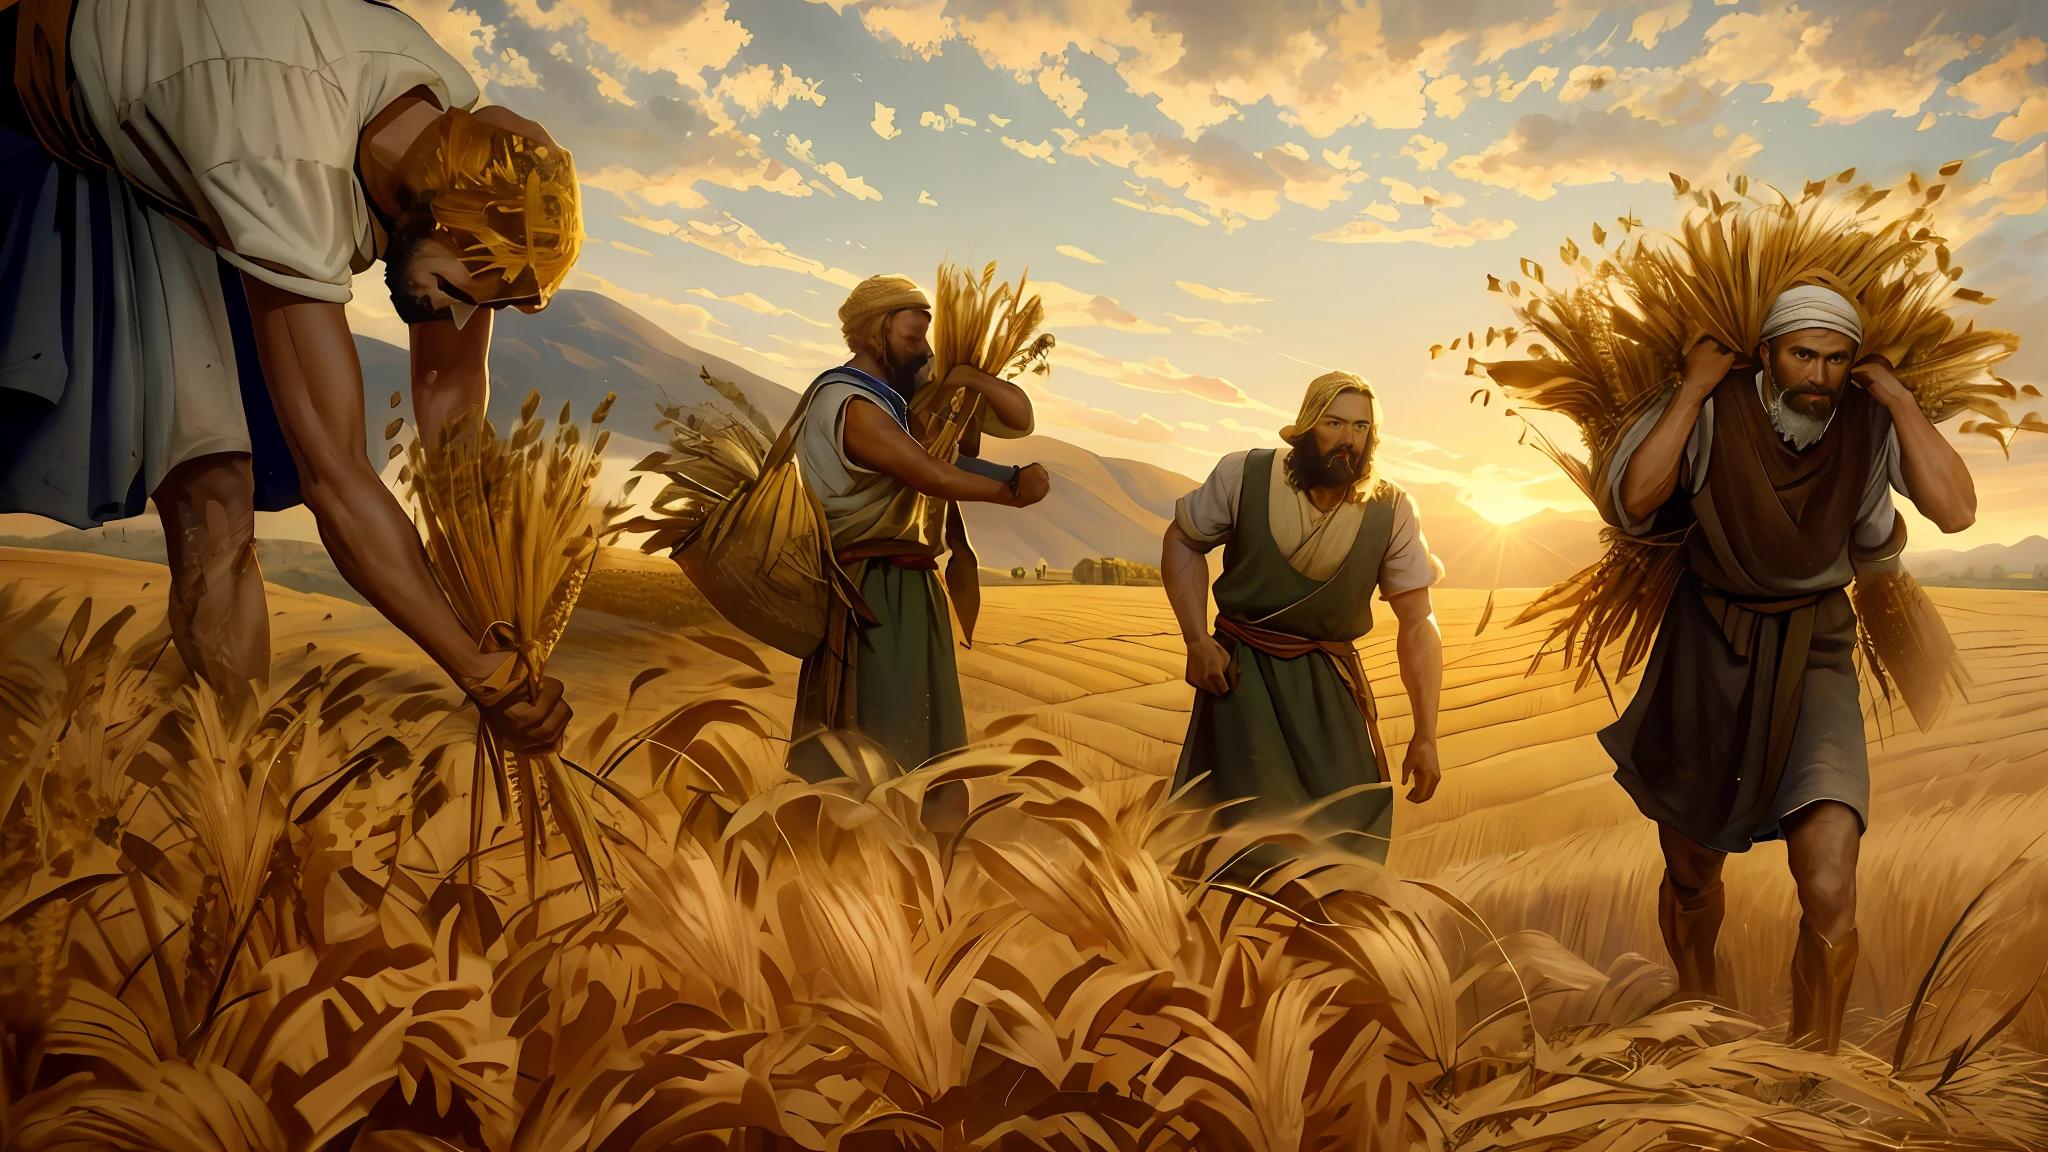 pintura al óleo, hay tres hombres cosechando trigo en el campo, plantación de trigo, representación bíblica épica, 8k hd, iluminación cinematográfica, alta calidad.